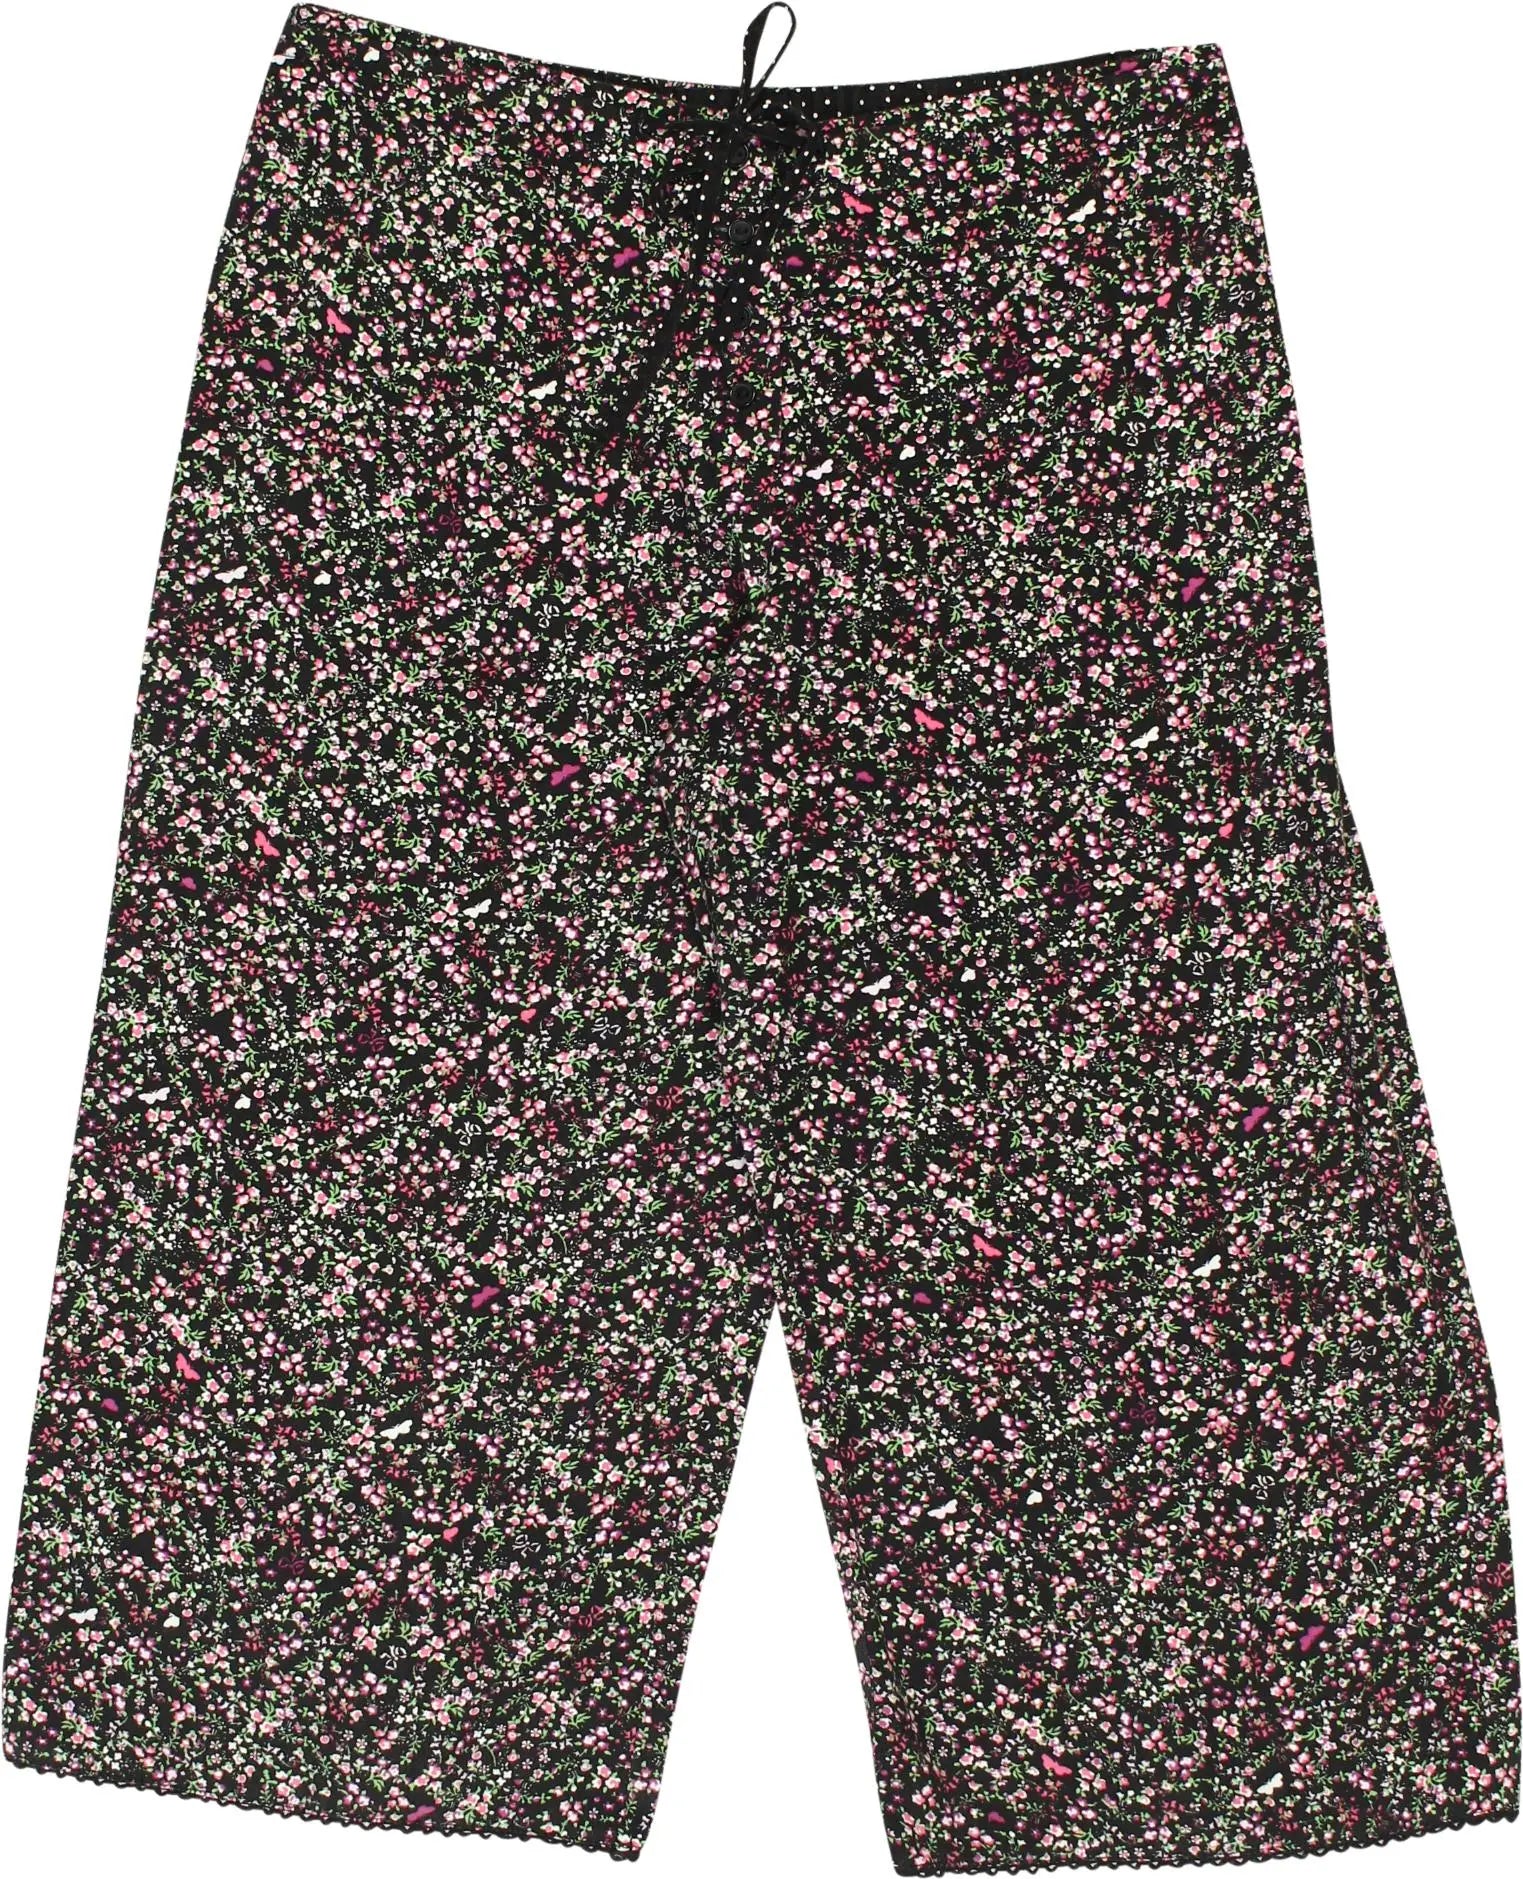 Hunkemöller - Floral Pyjama Shorts- ThriftTale.com - Vintage and second handclothing